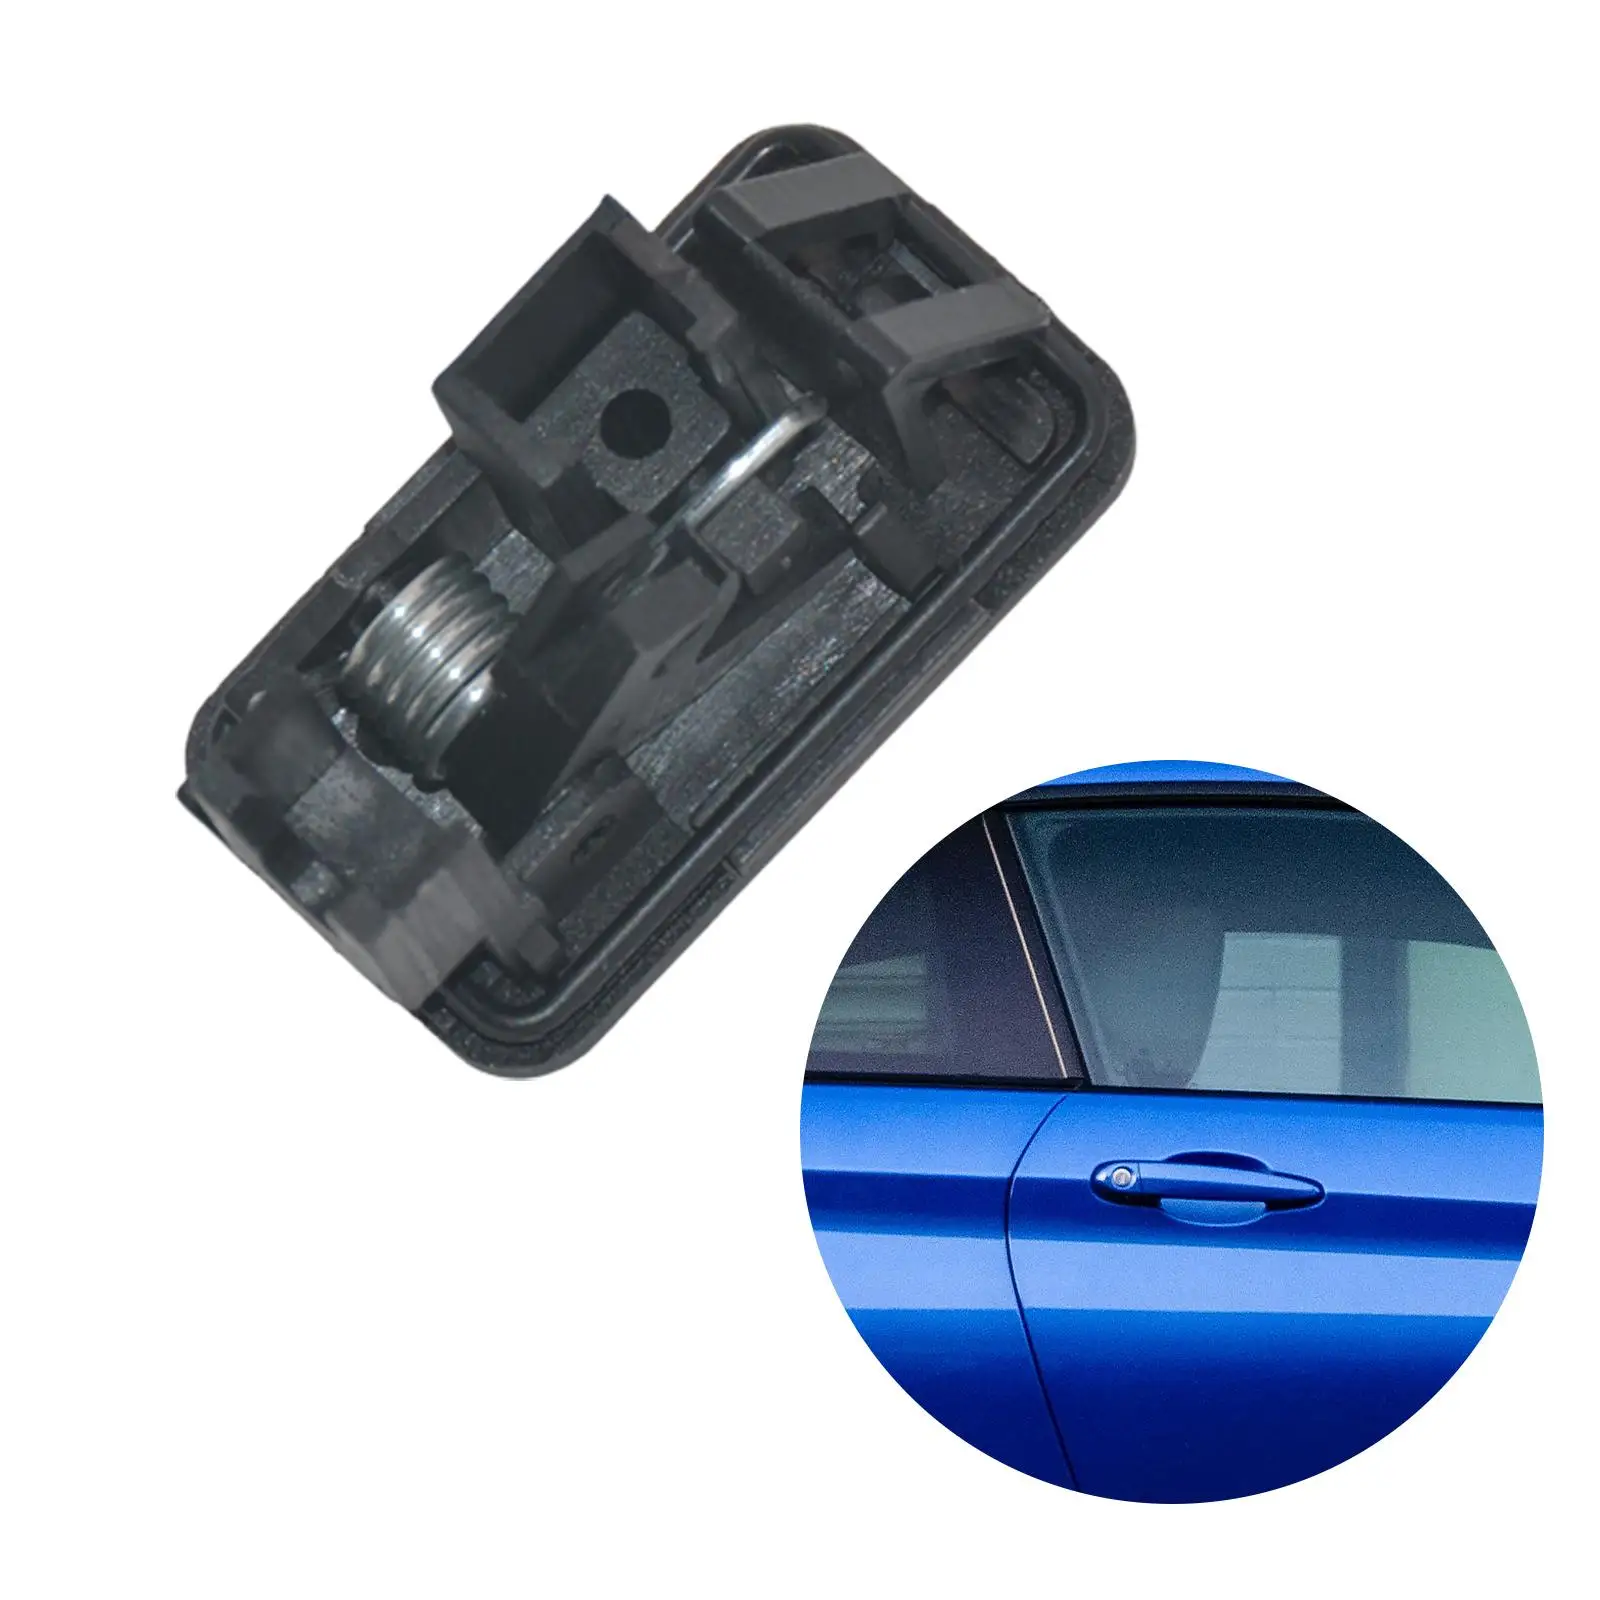 76520-77J00 Durable Car Auto Parts Accessory Premium Fuel Filler Door Lid Lock Release Actuator for Suzuki Swift SX4 Vitara